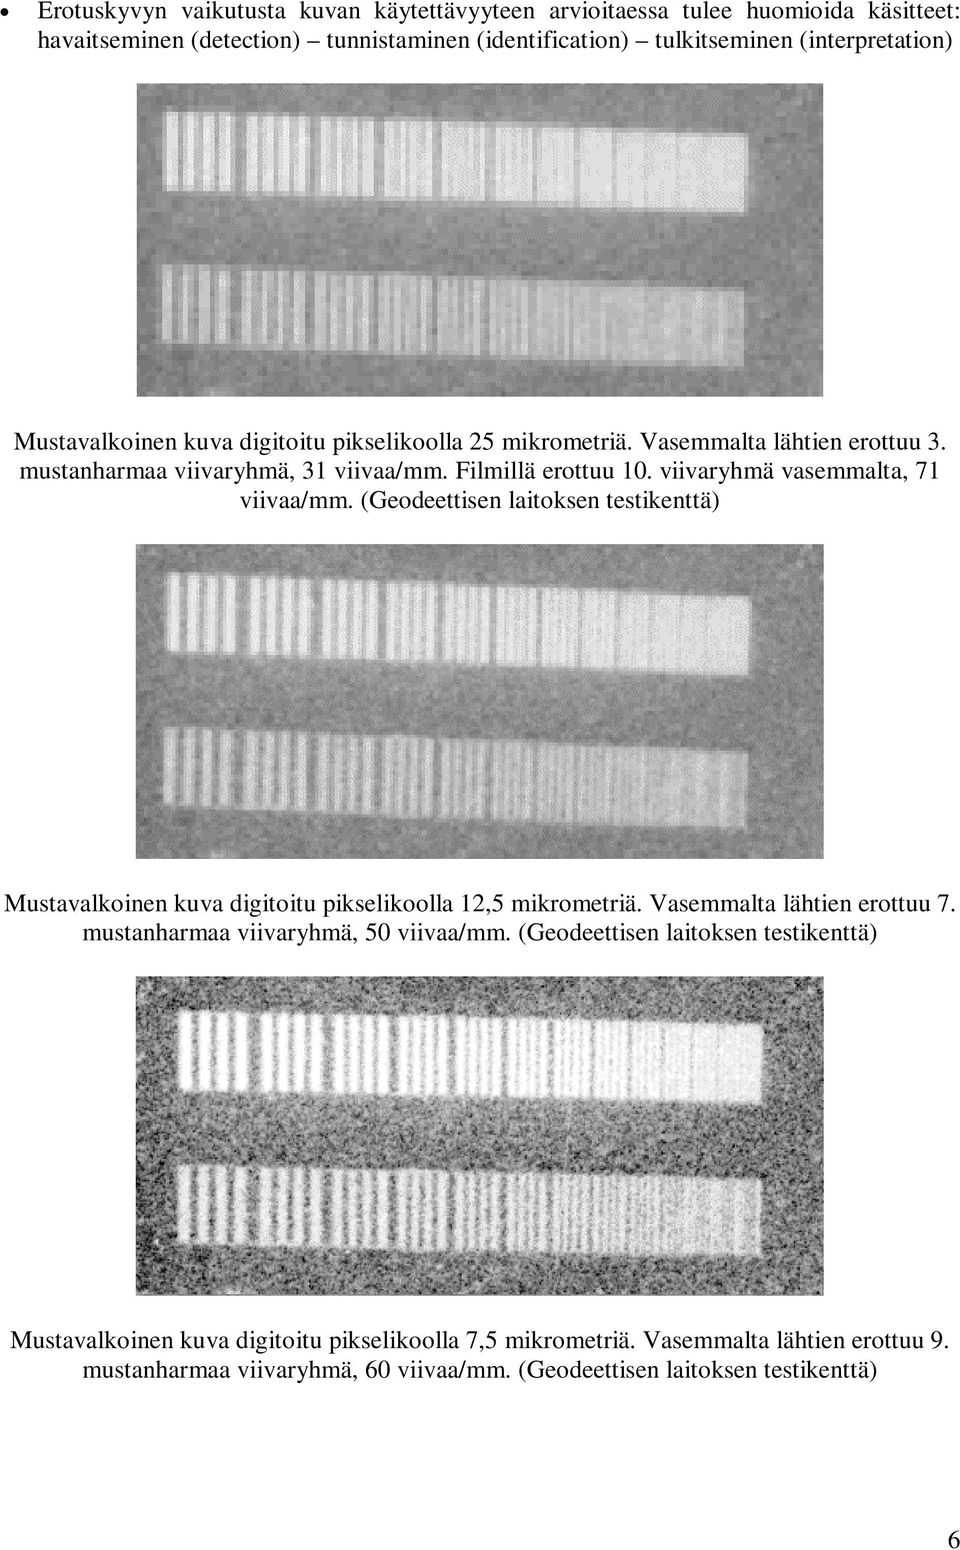 viivaryhmä vasemmalta, 71 viivaa/mm. (Geodeettisen laitoksen testikenttä) Mustavalkoinen kuva digitoitu pikselikoolla 12,5 mikrometriä. Vasemmalta lähtien erottuu 7.